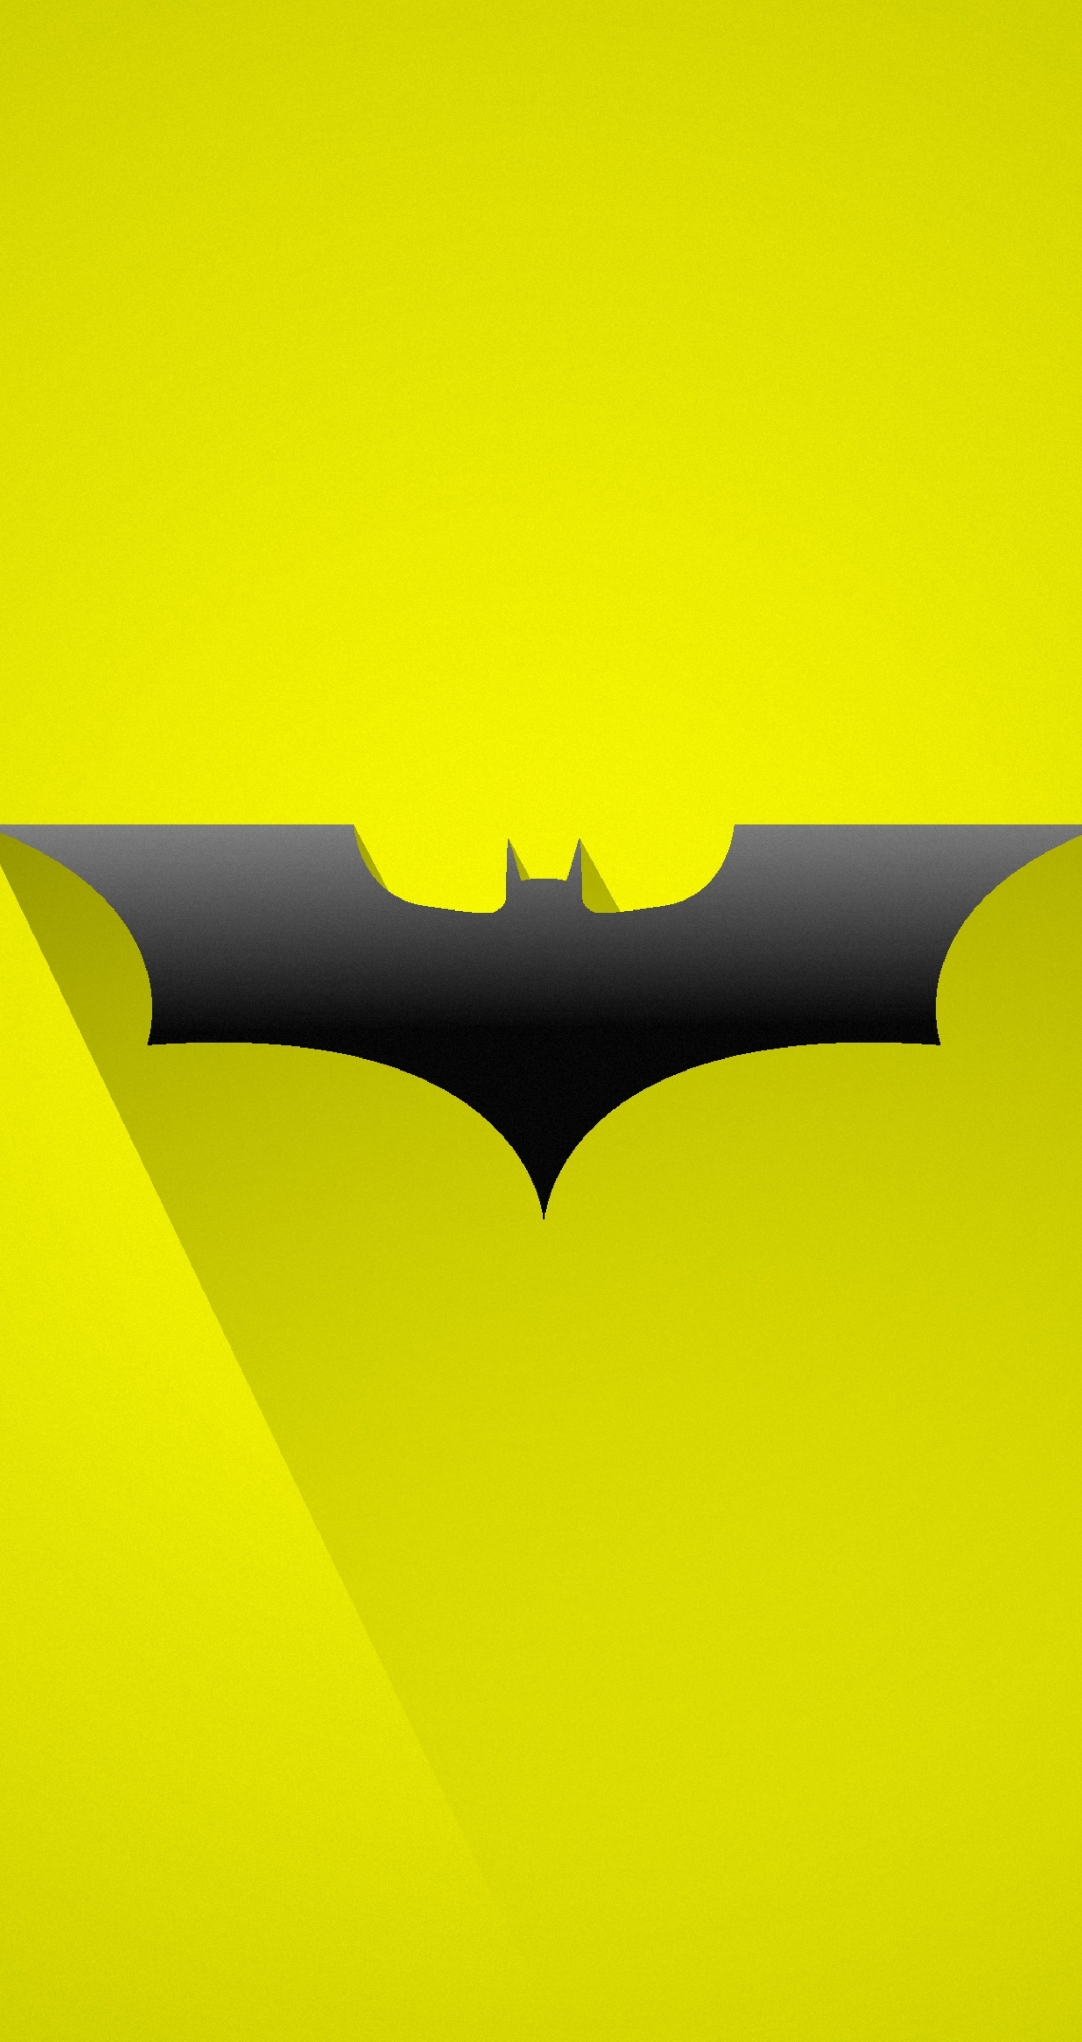 1082x2042 Batman 8K Logo 1082x2042 Resolution Wallpaper, HD Minimalist ...